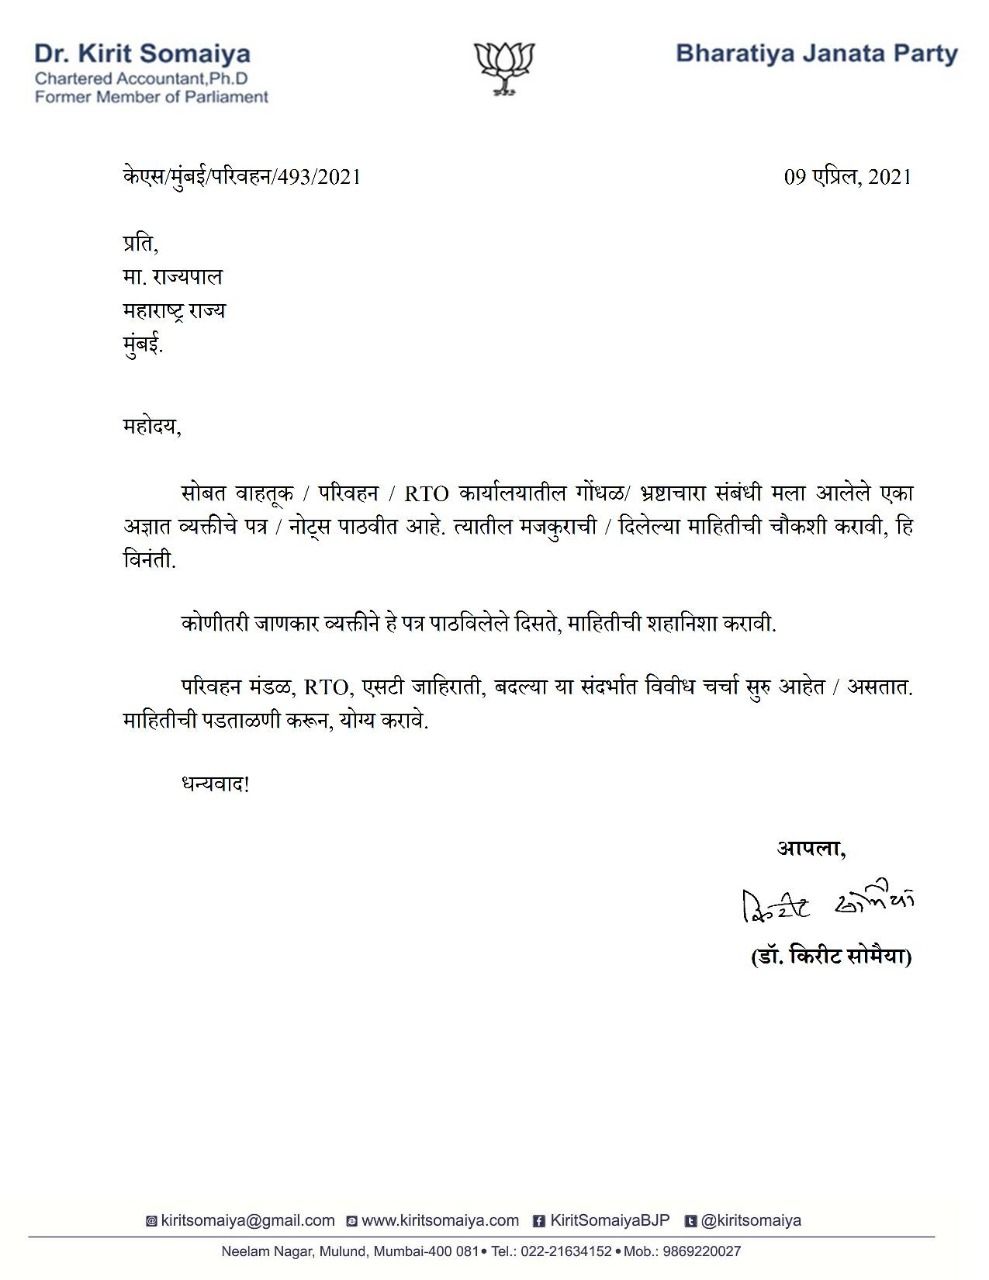 nitin gadkari, kirit somaiya accuse anil parab official of extortion - Satya Hindi